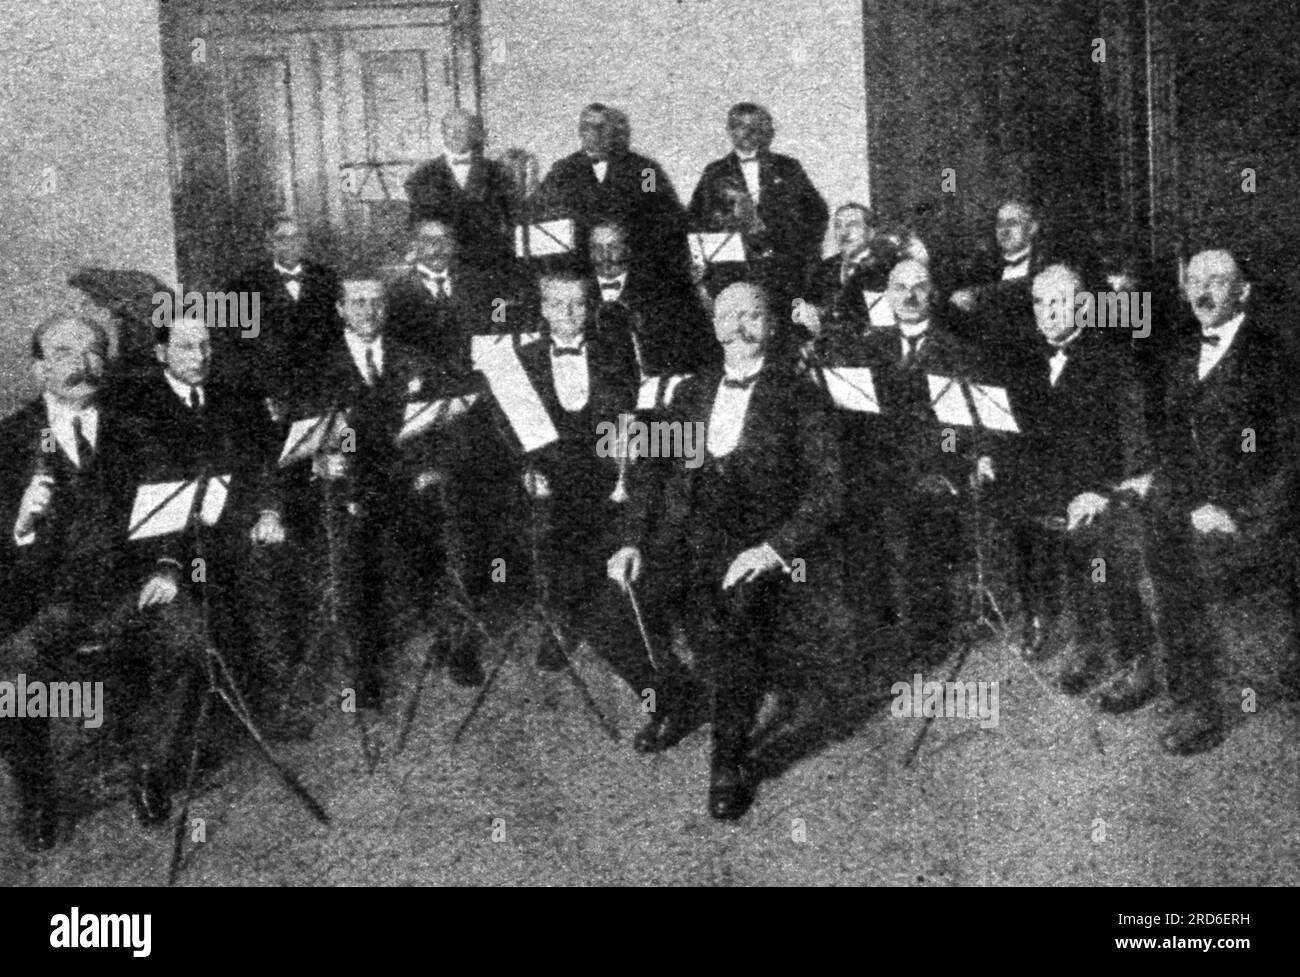 Woitschach, Carl, 29.2.1864 - 24.5,1939, chef d'orchestre et compositeur allemand, avec son orchestre, années 1920, DROITS-SUPPLÉMENTAIRES-AUTORISATION-INFO-NON-AVAILABLE Banque D'Images